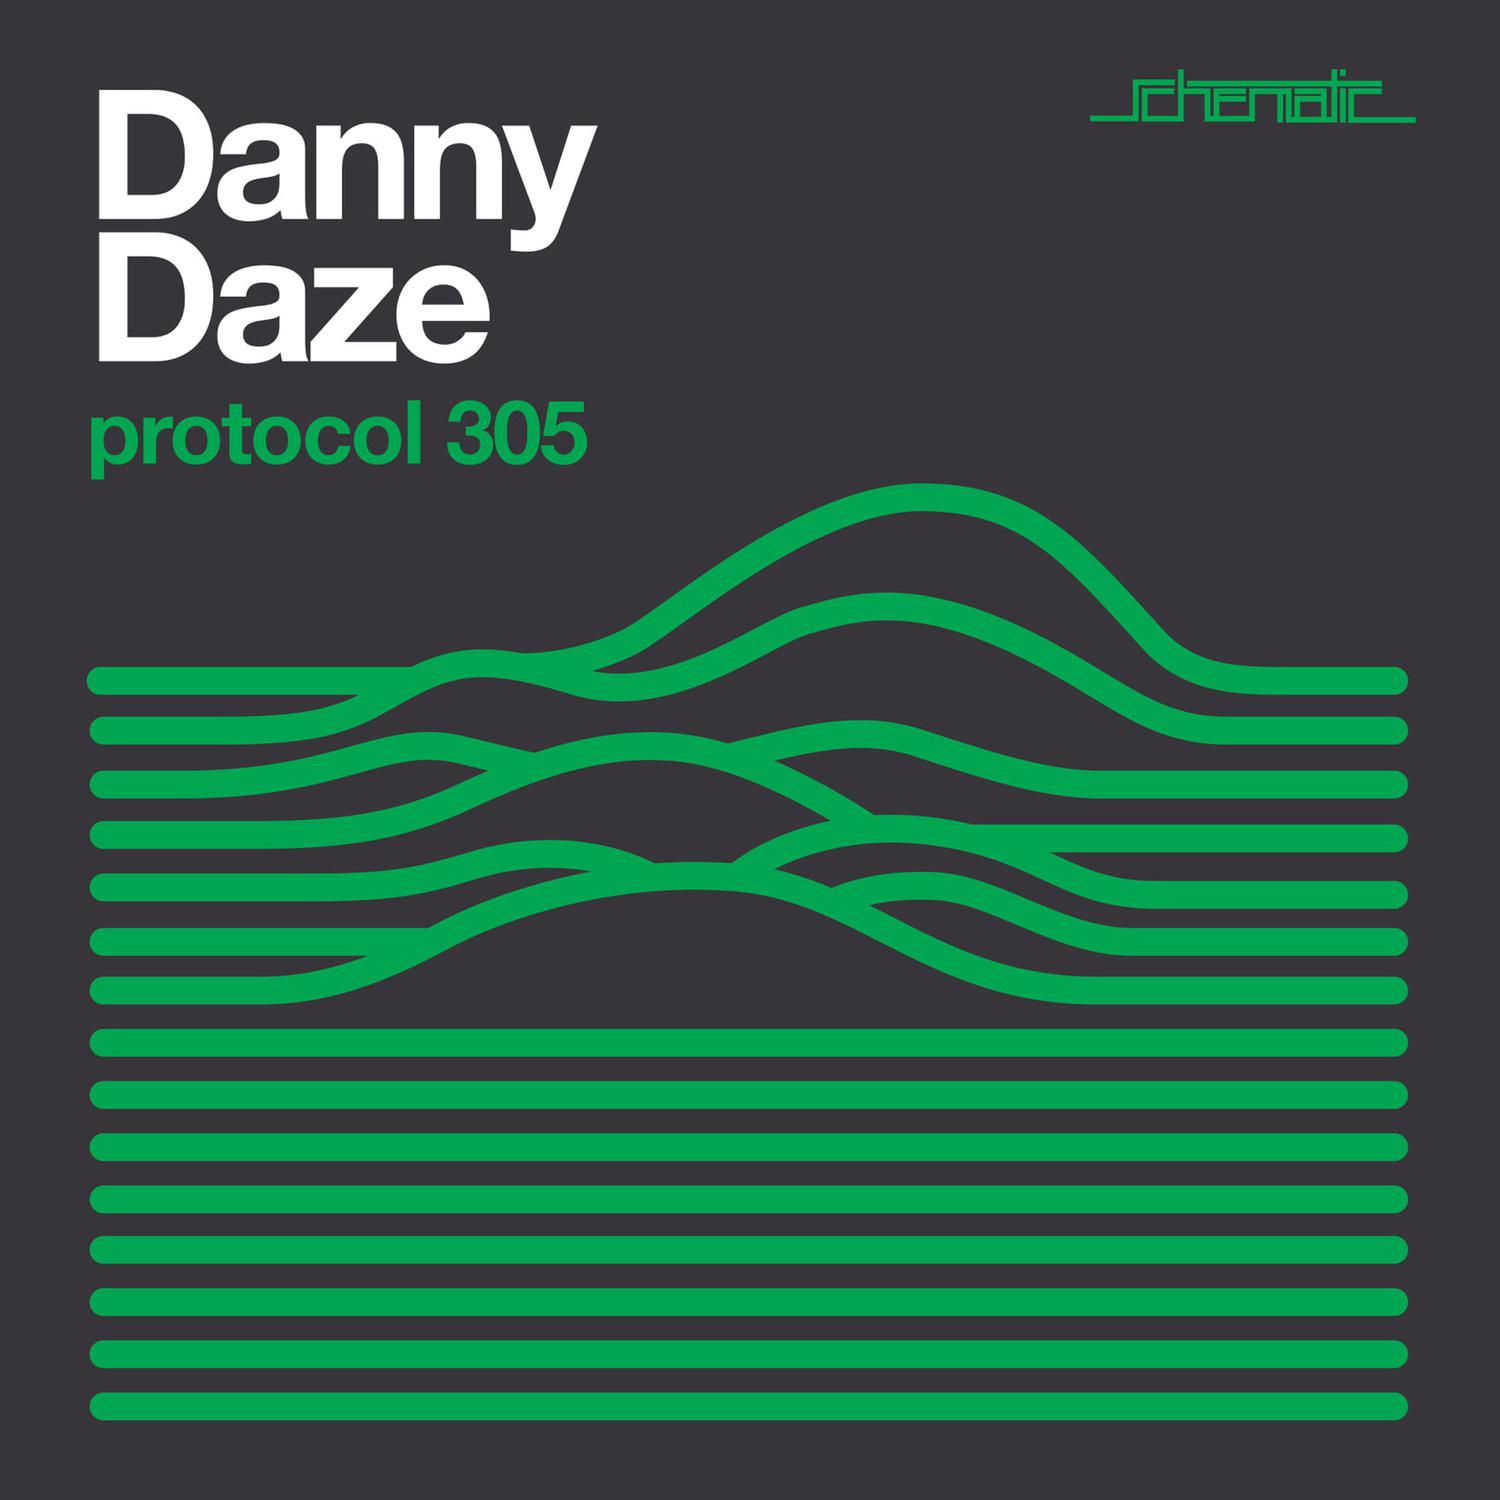 Danny Daze - Execute